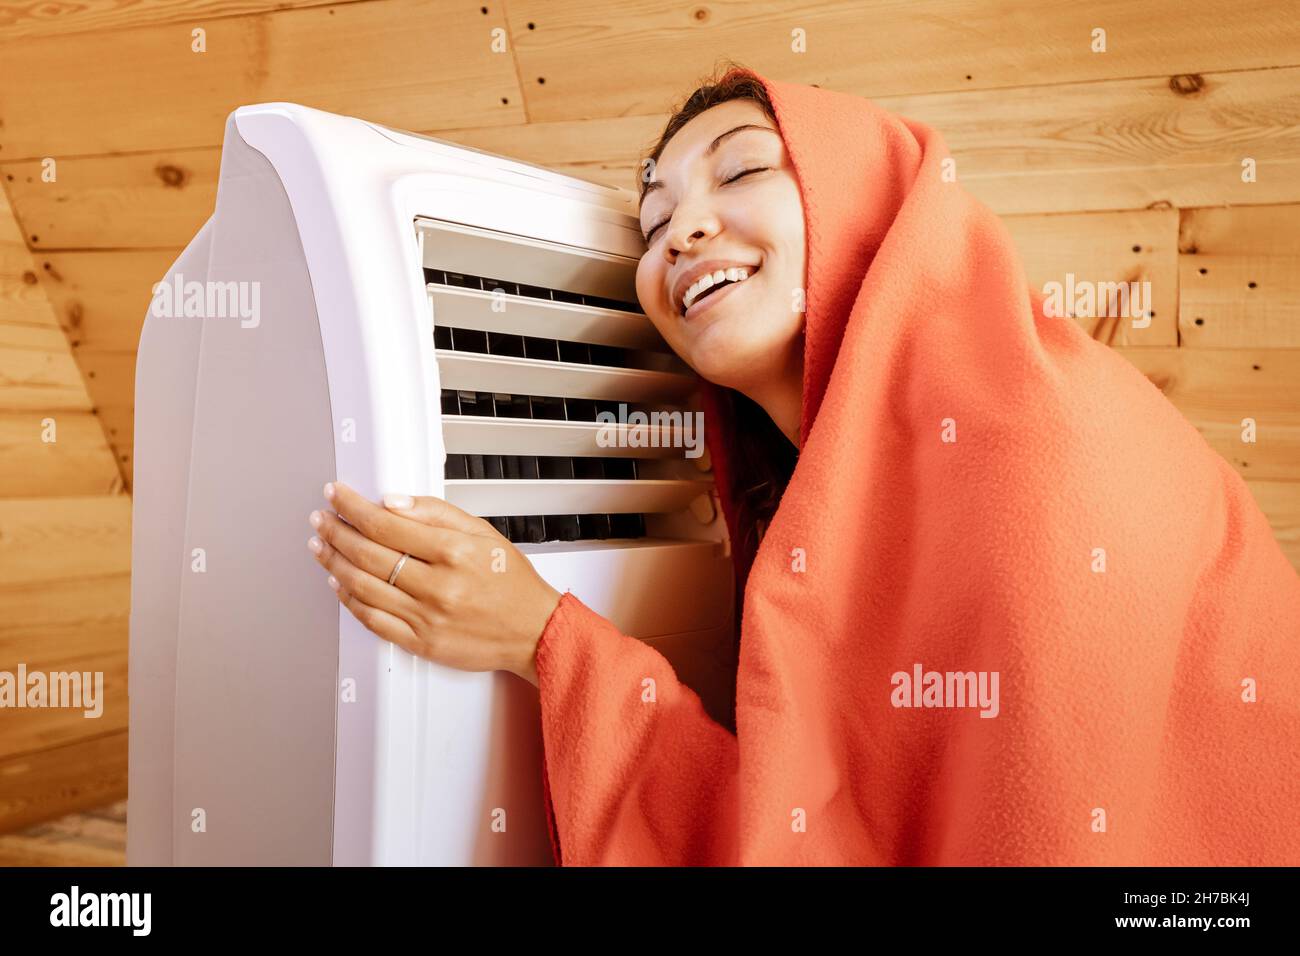 Eine lustige Frau wärmt sich im Winter an einem elektrischen Heizkörper in ihrem Holzhaus auf, eingewickelt in eine Decke. Das Konzept von Energie und Komfort in der kalten Jahreszeit Stockfoto